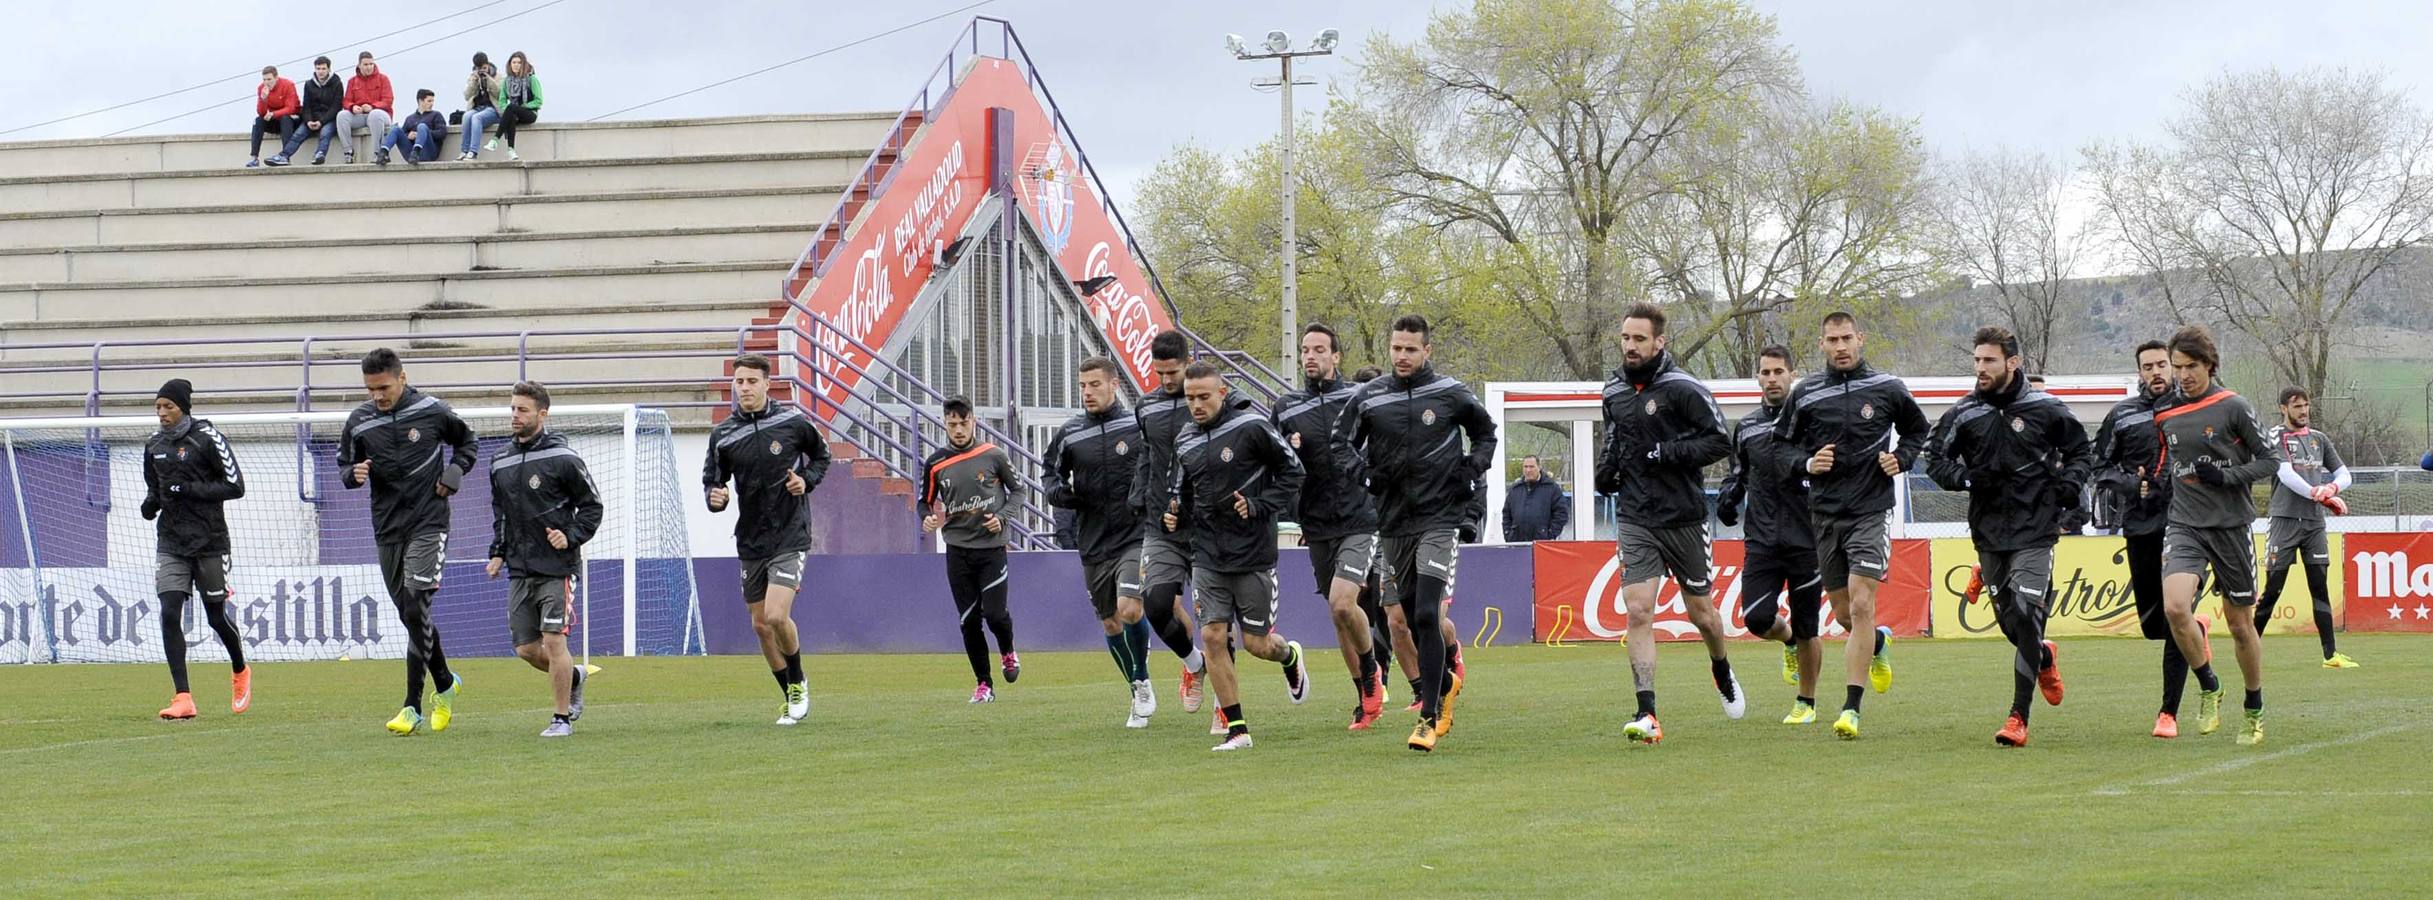 Entrenamiento del Real Valladolid en los campos Anexos